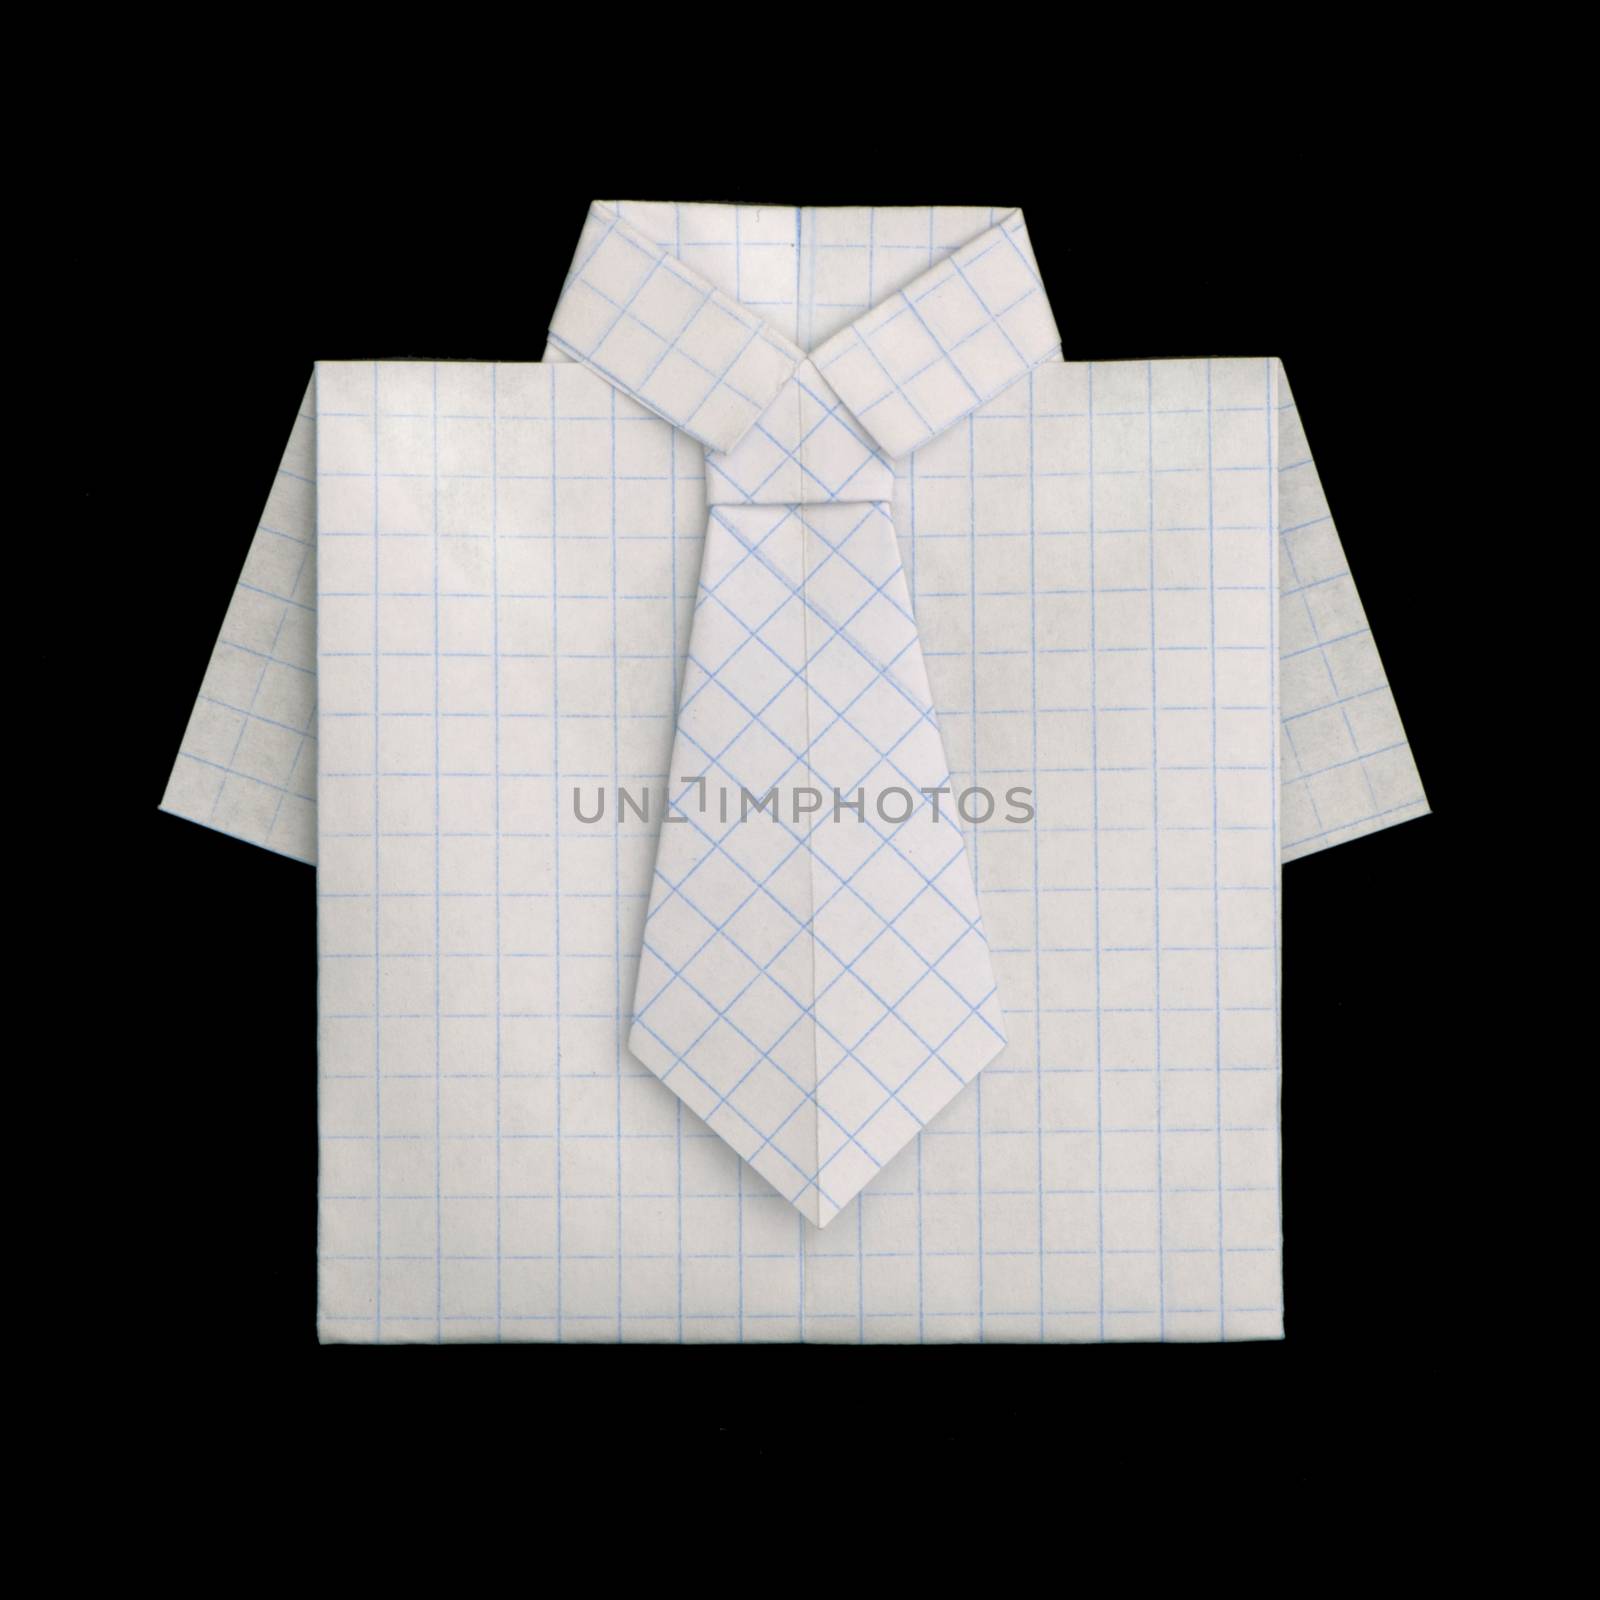 Shirt folded origami style by deyan_georgiev